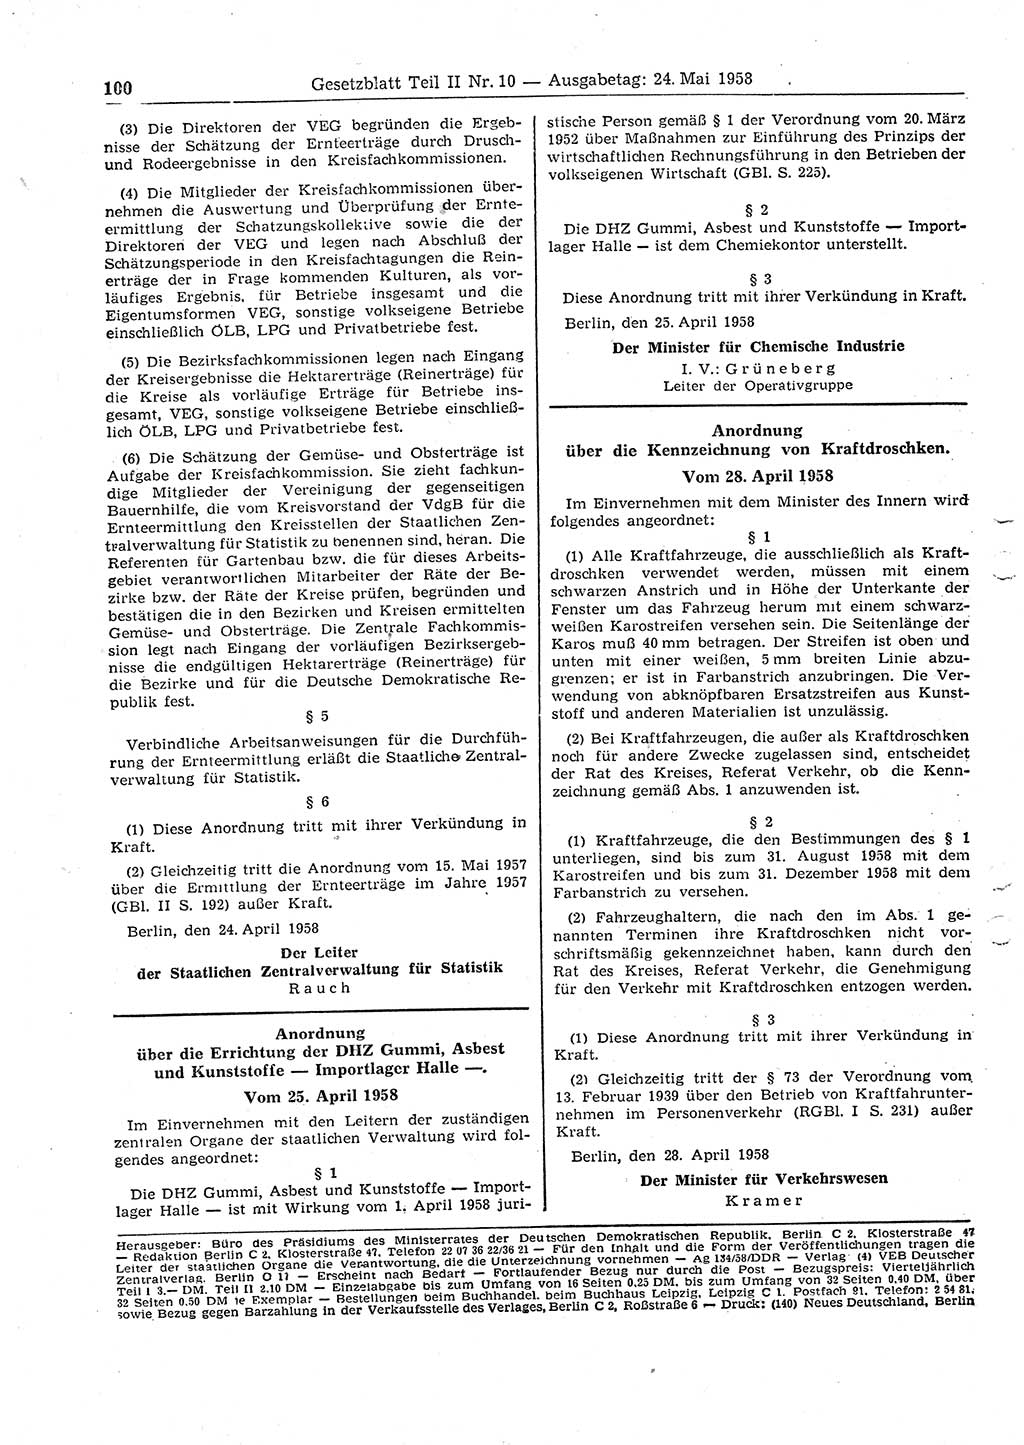 Gesetzblatt (GBl.) der Deutschen Demokratischen Republik (DDR) Teil ⅠⅠ 1958, Seite 100 (GBl. DDR ⅠⅠ 1958, S. 100)